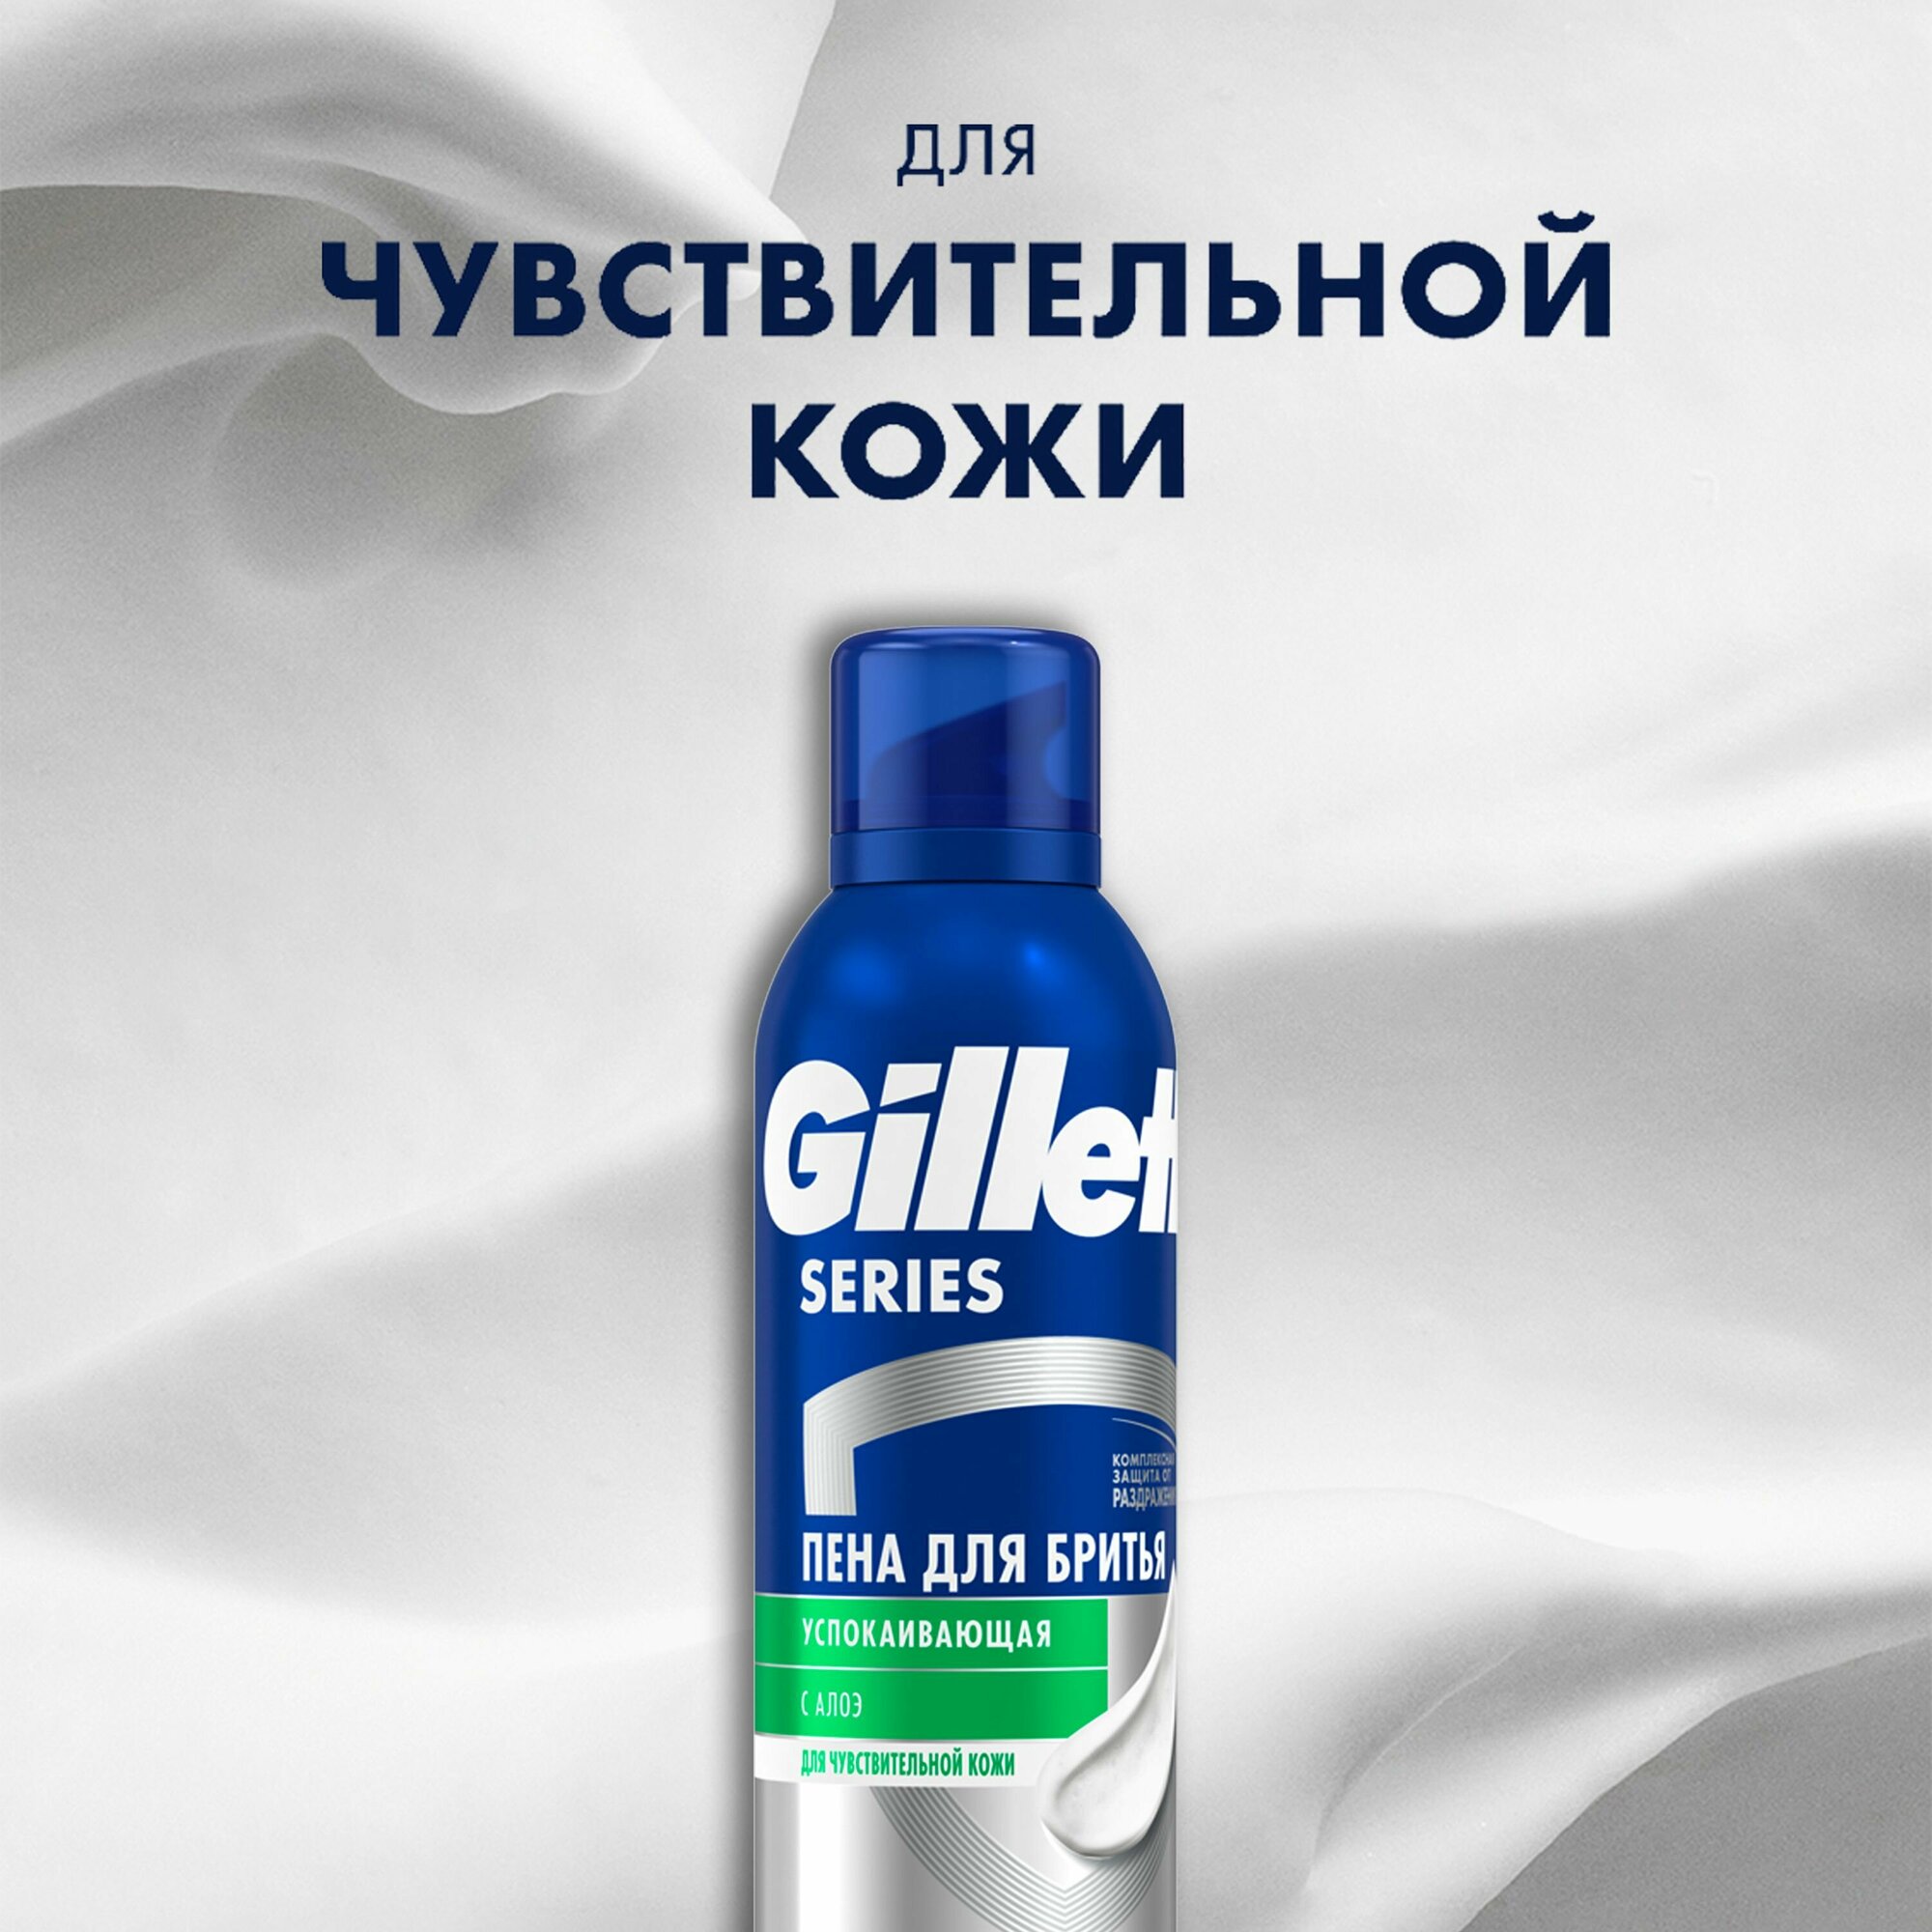 Подарочный набор для мужчины Gillette Fusion5 бритва и пена для бритья, 200 мл - фото №7